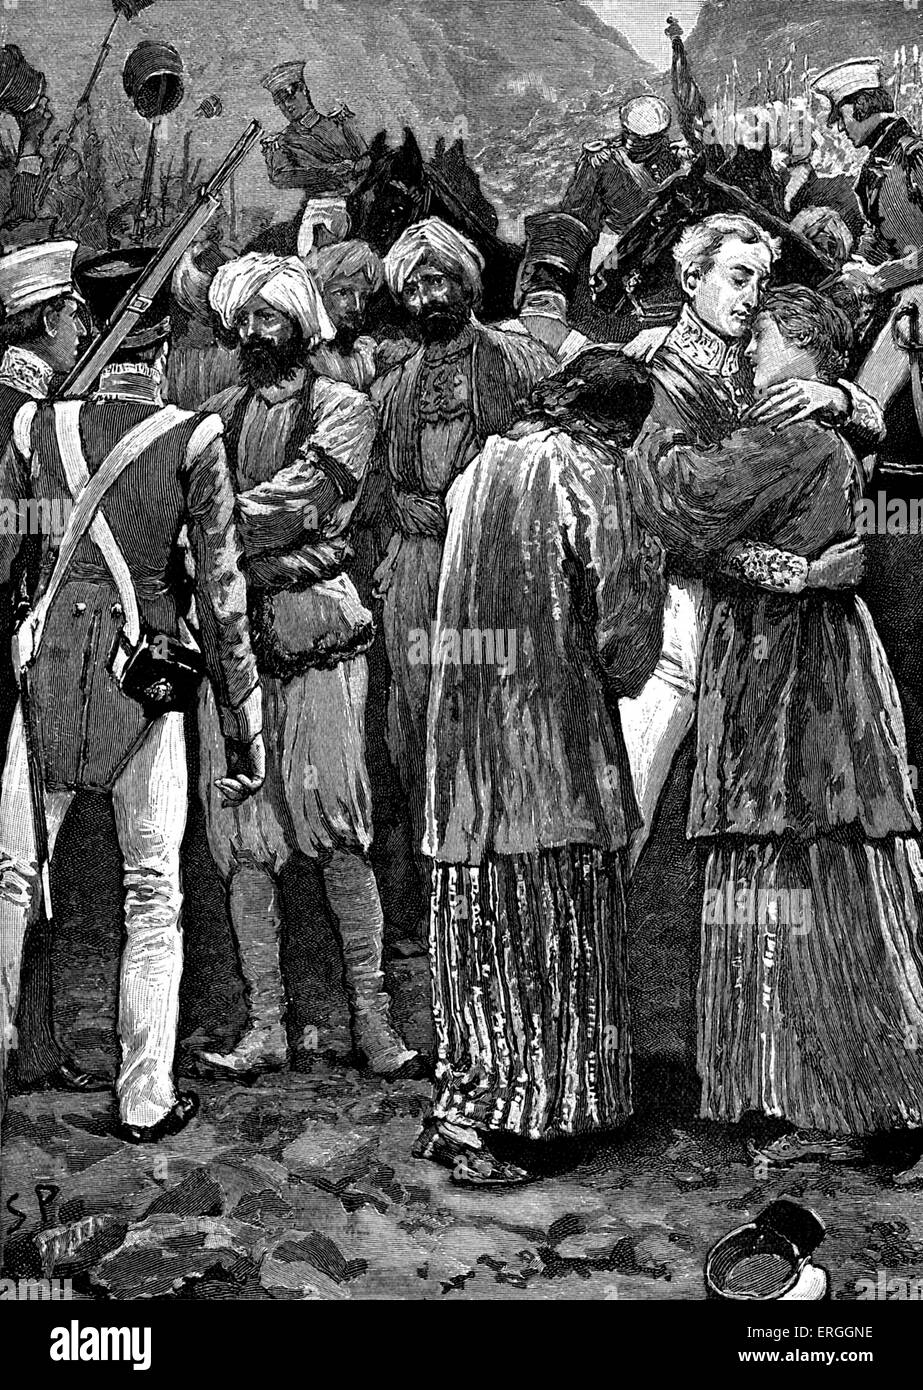 Primo anglo- guerra in Afghanistan, 1839 - 1842: Salvataggio dei prigionieri britannici da Akbar Kahn. Il principe afgano, un generale, un leader tribale Foto Stock